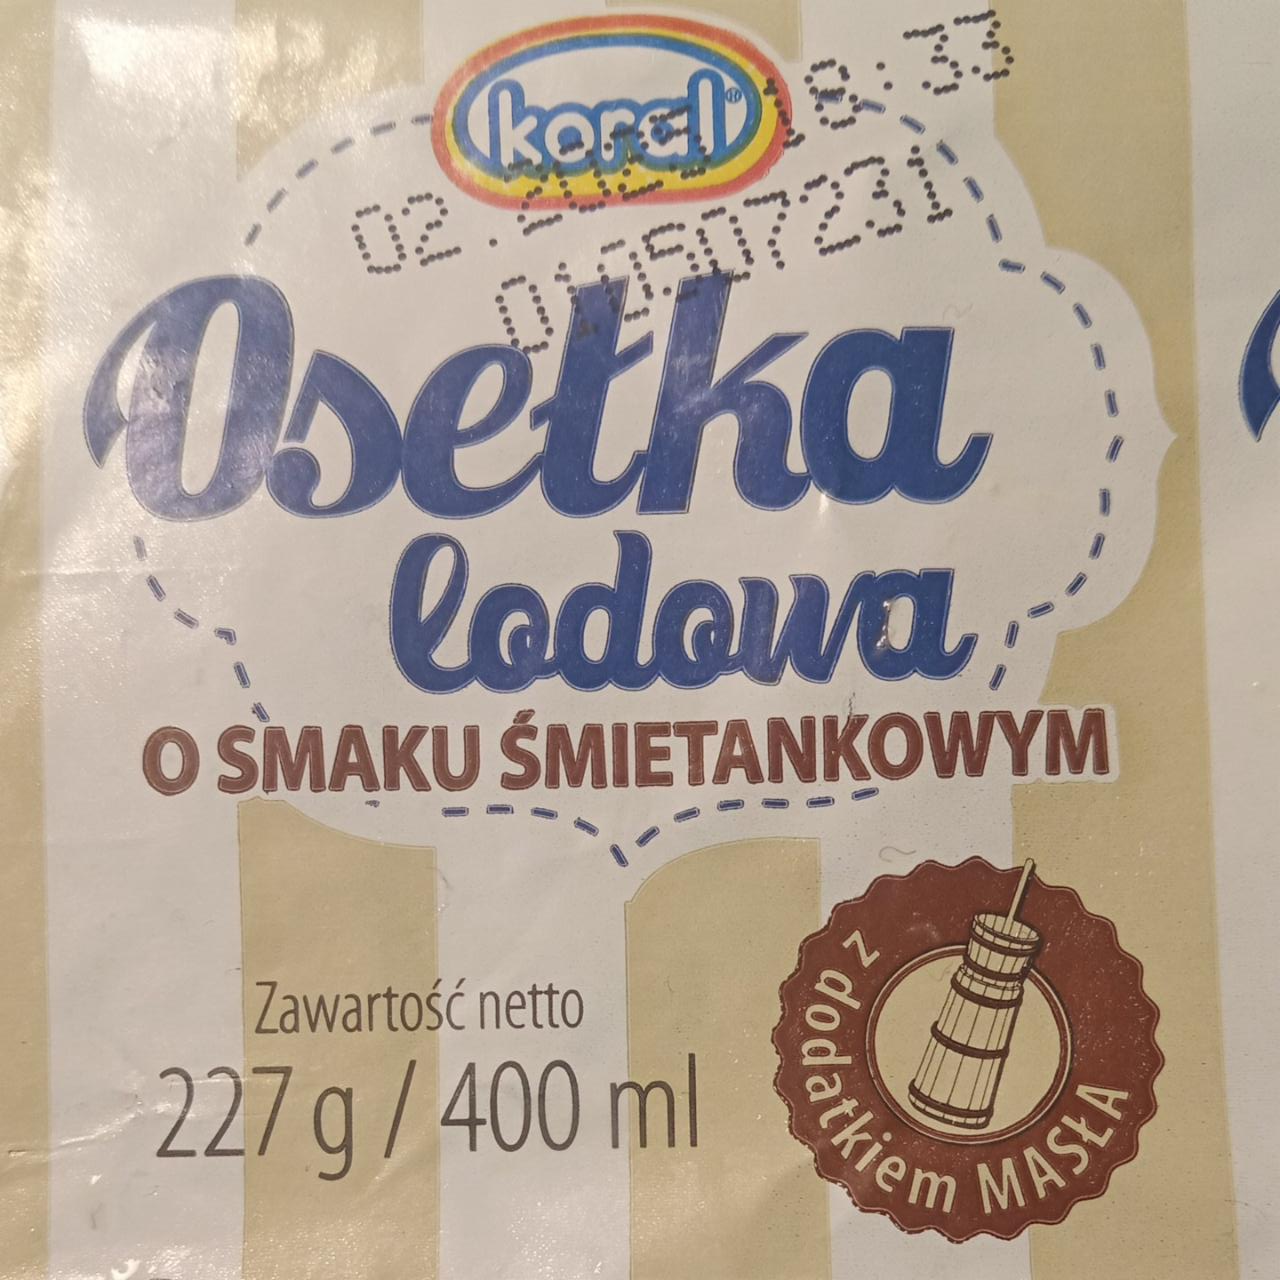 Фото - Мороженое со сливочным вкусом Osetka Lodowa Koral